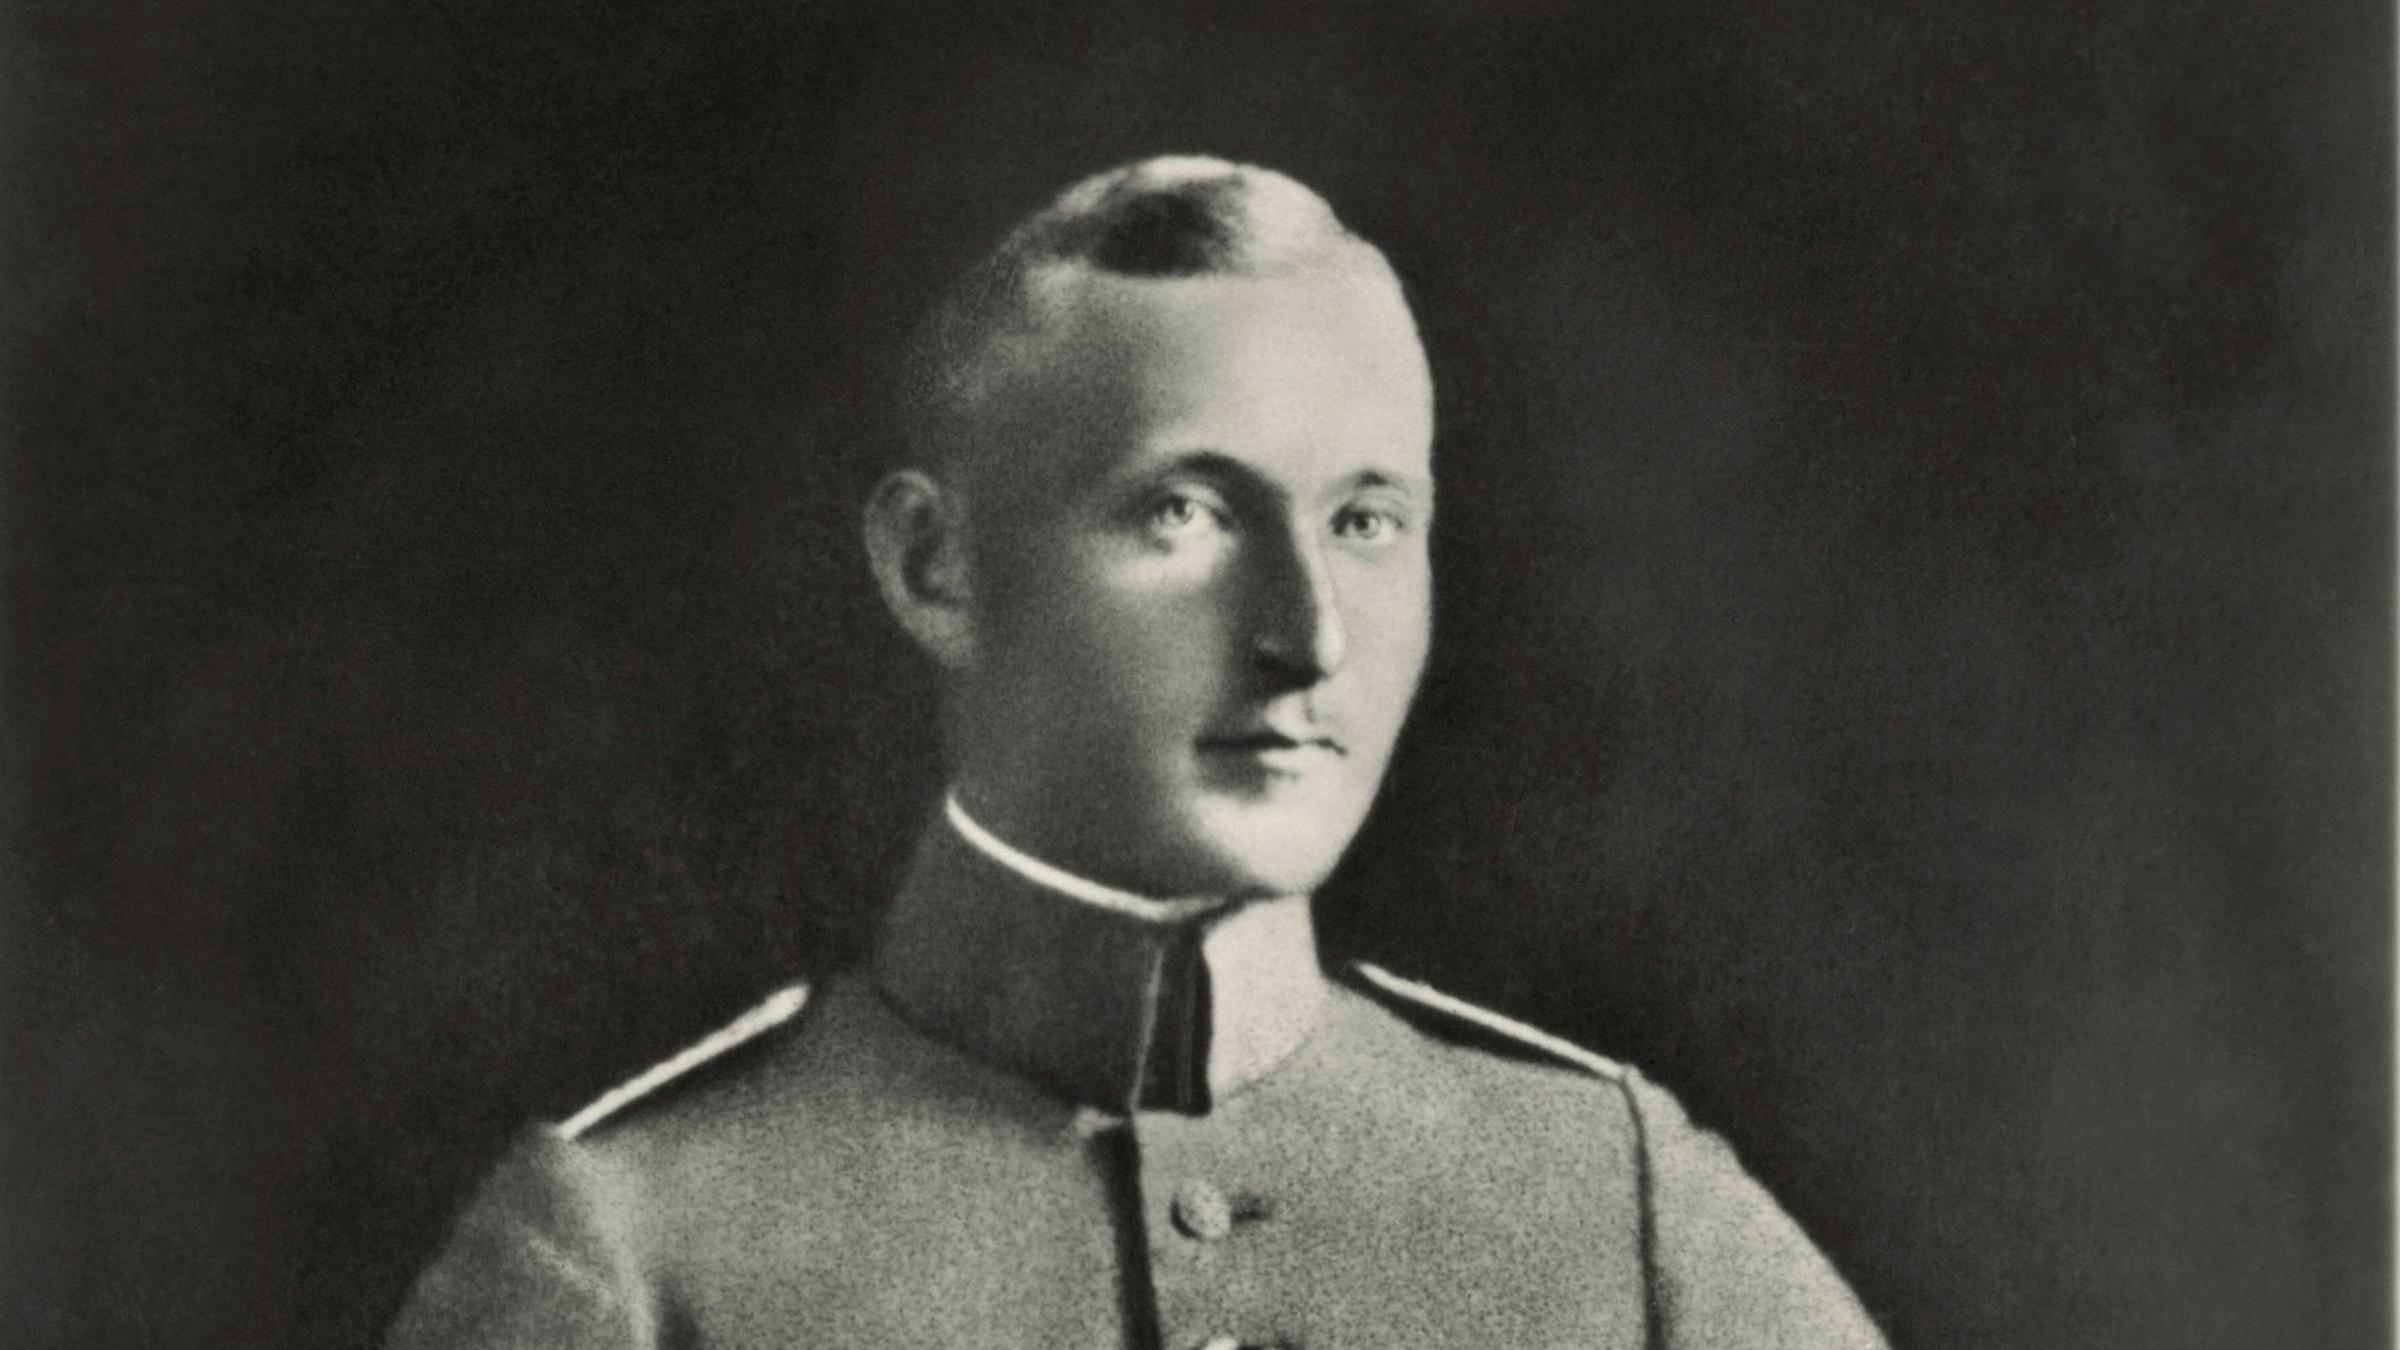 Schwarz-Weiß-Porträt des Freikorpsoffiziers Albert Leo Schlageter in Uniform